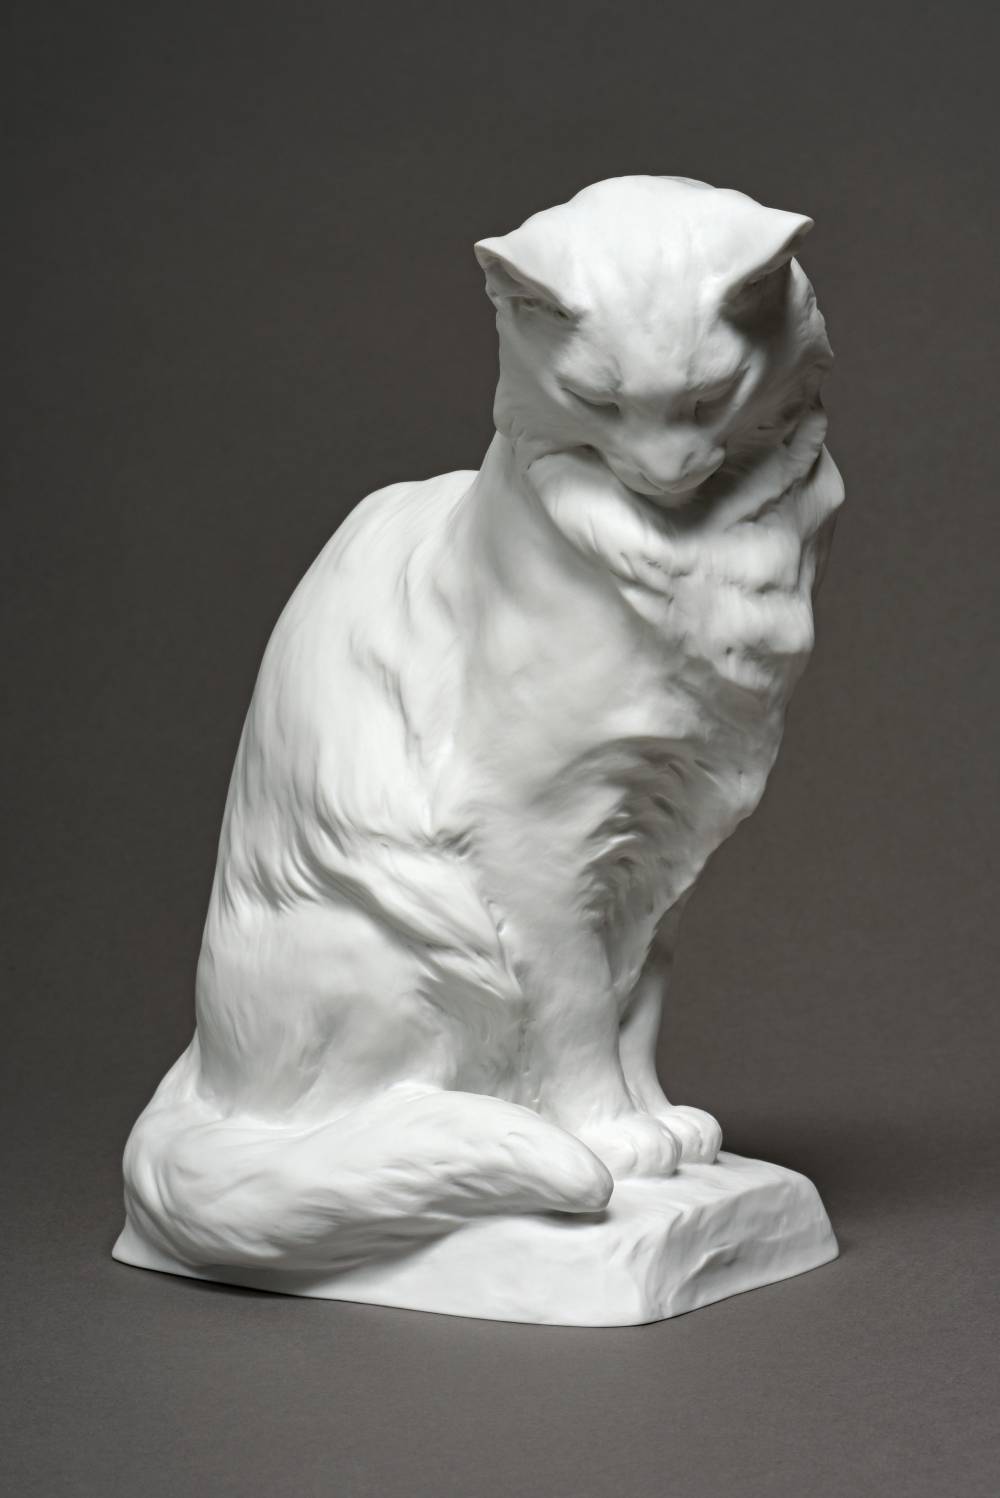 Sitting cat sculpture by Louis Riché